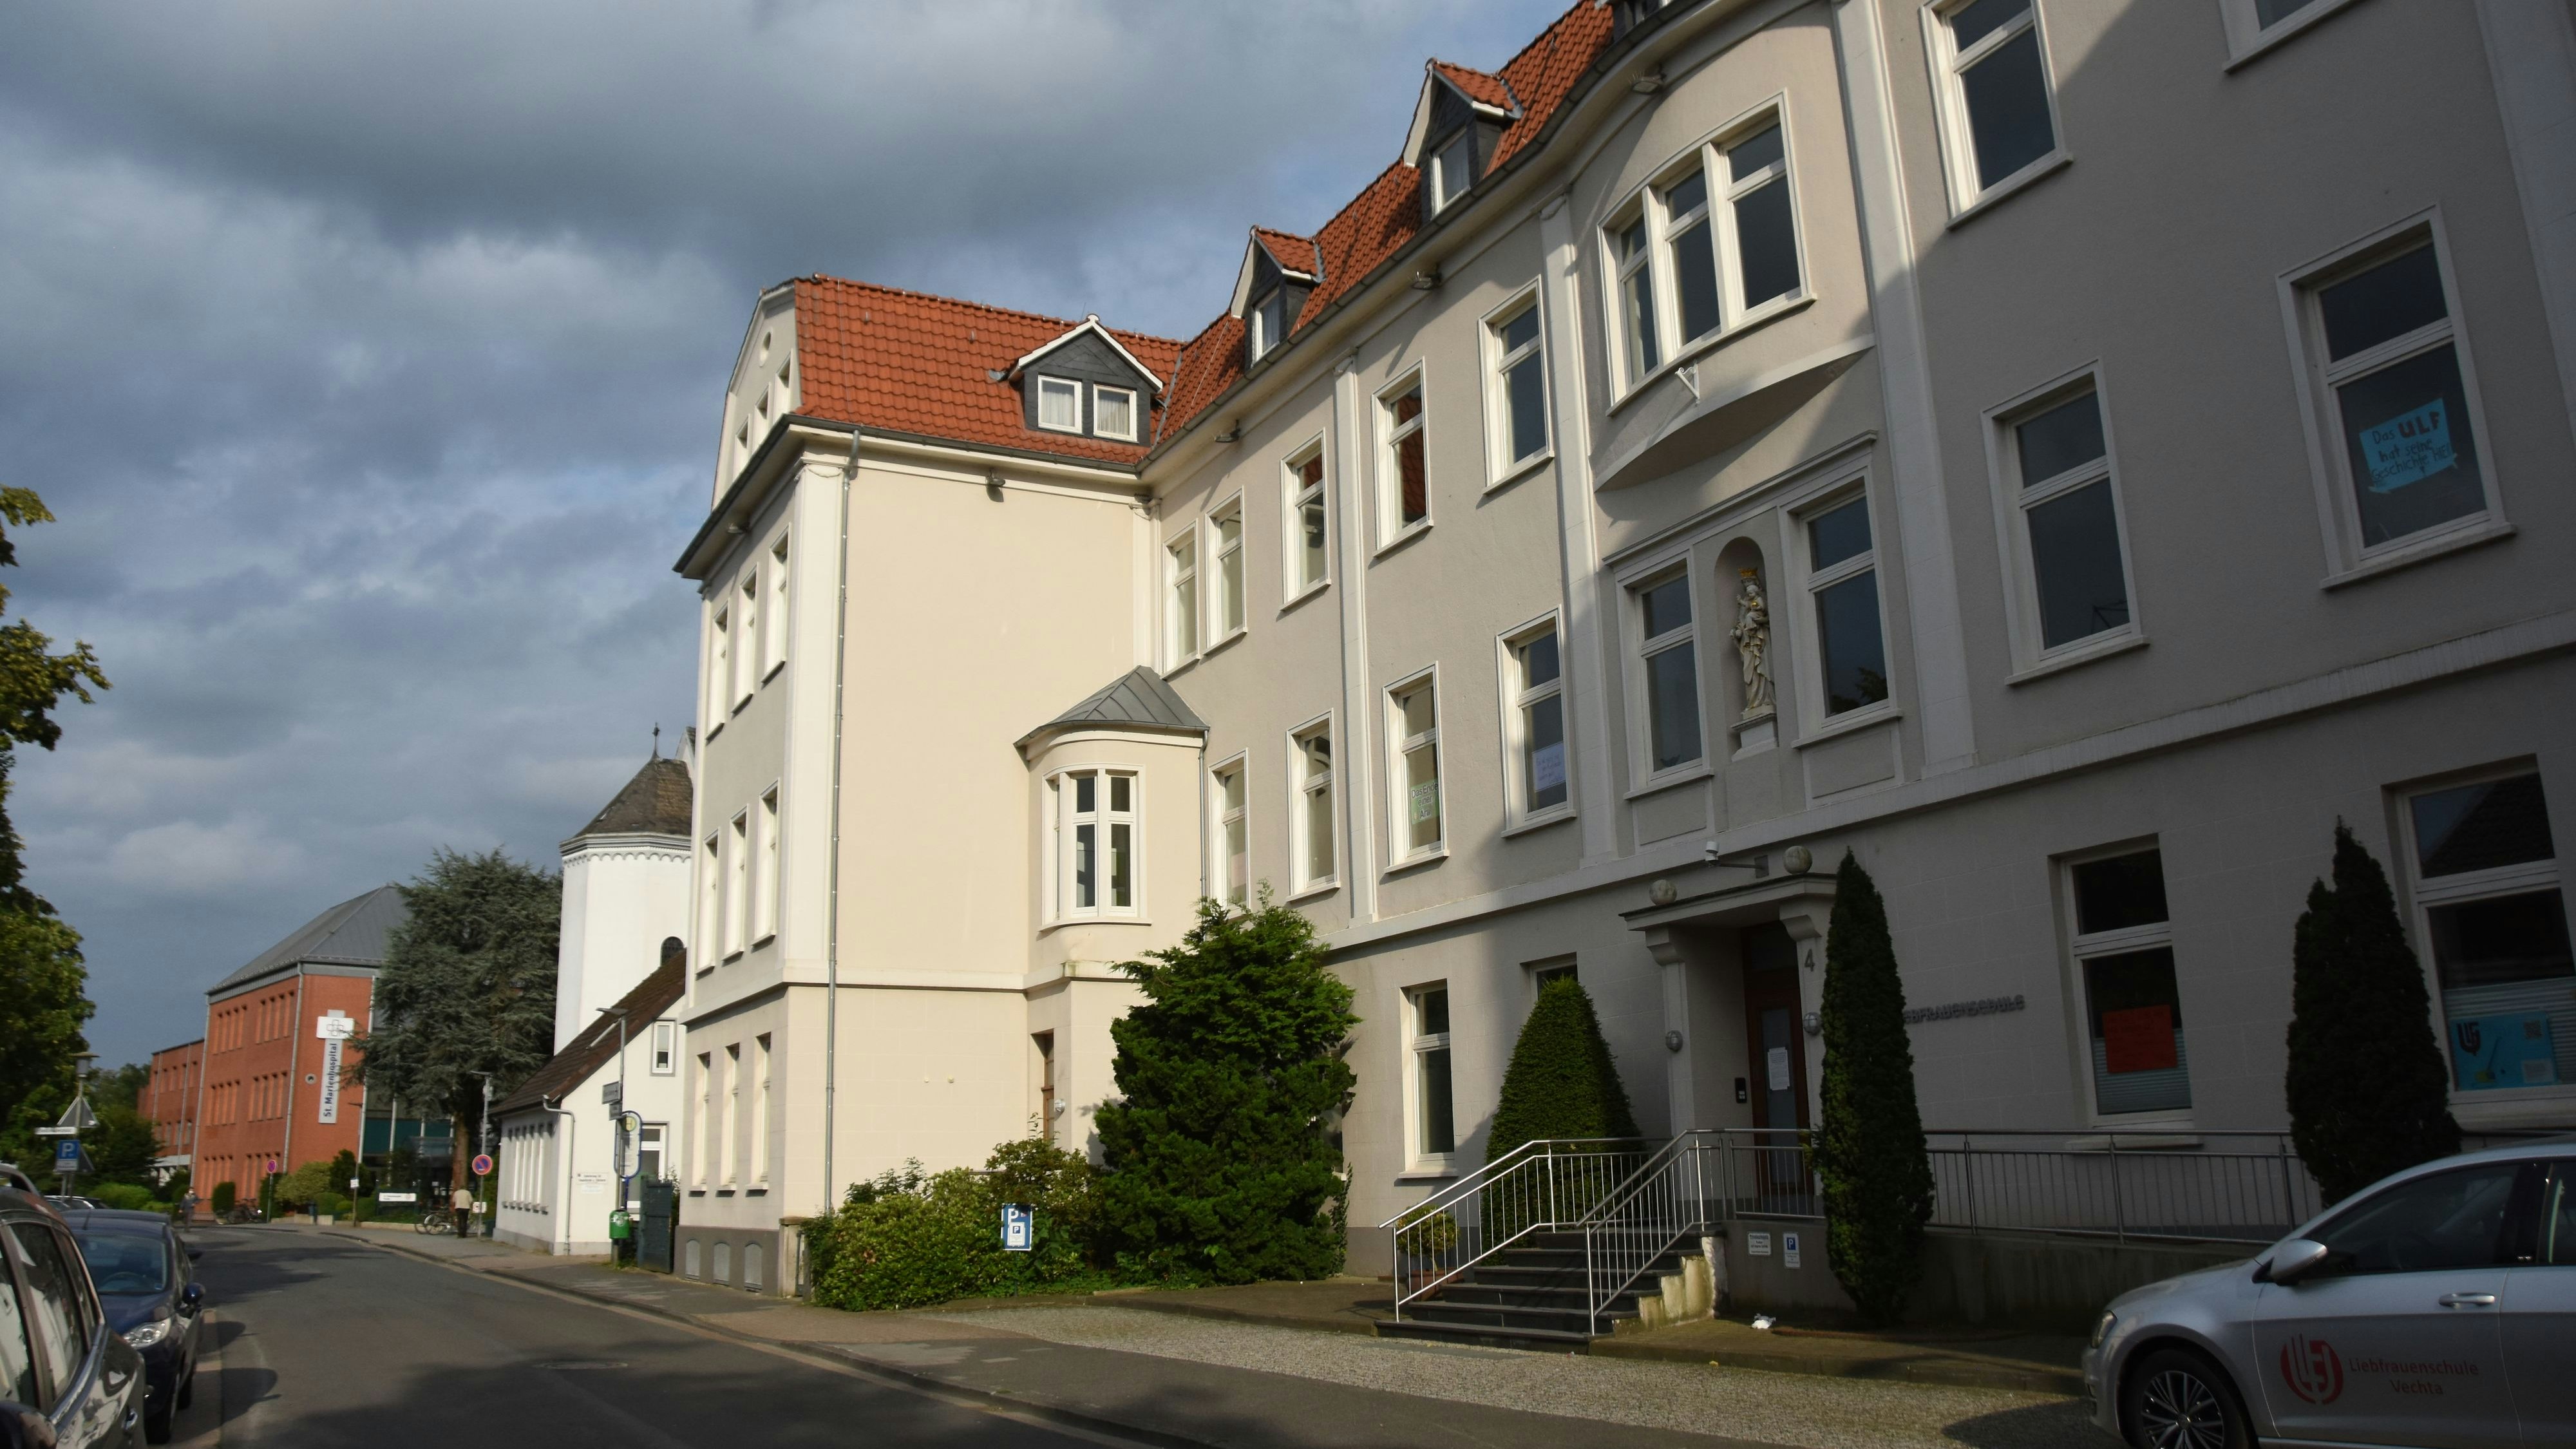 Schulgebäude wird nicht zur Klinik: Das Gelände der Liebfrauenschule neben dem St. Marienhospital in Vechta wird nicht überplant. Foto: Tzimurtas